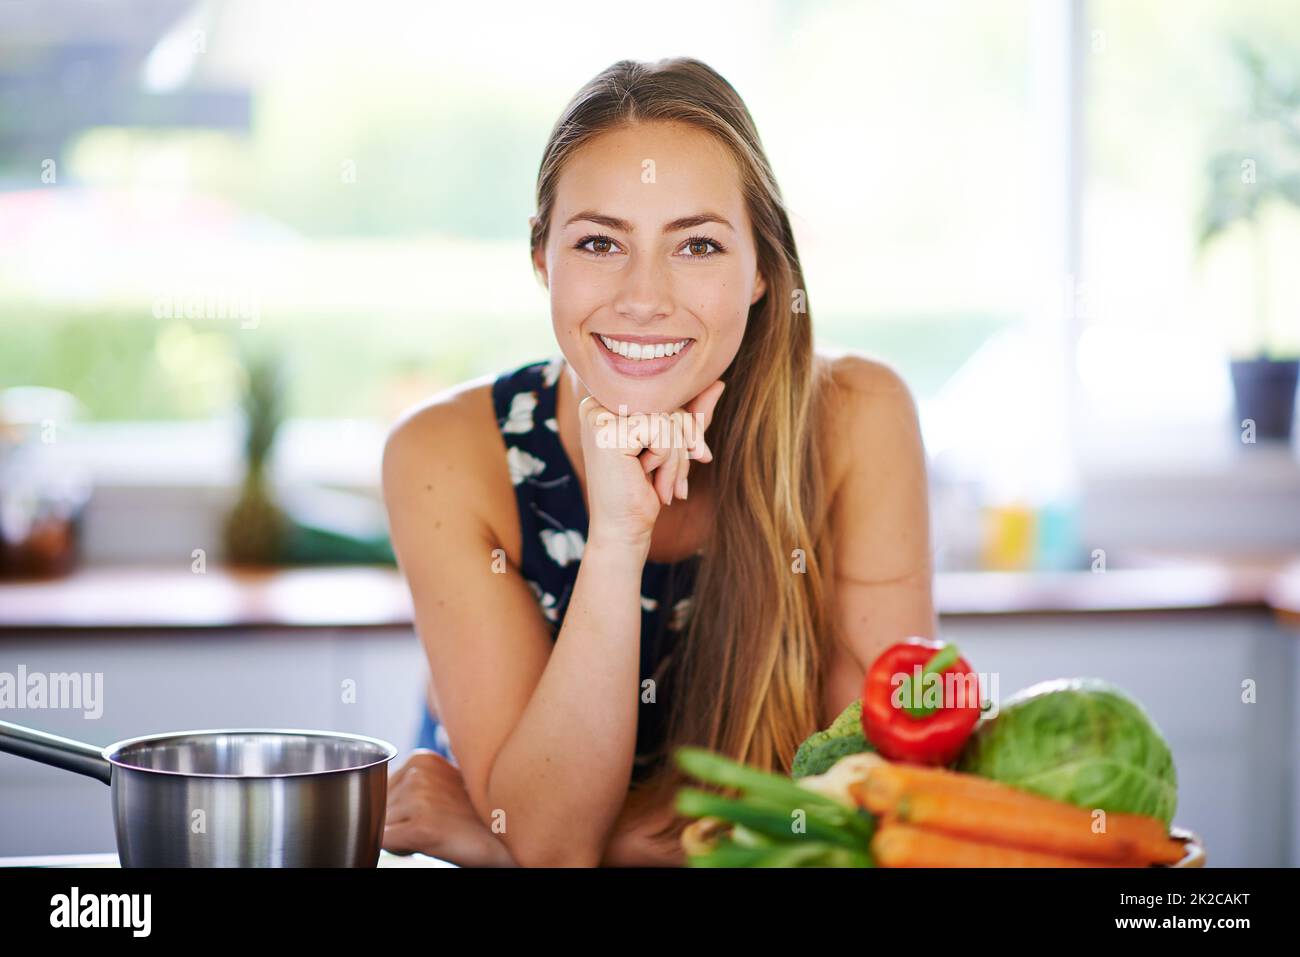 Évitez le régime, juste manger sain. Portrait d'une jeune femme penchée sur son comptoir de cuisine avec un pot et des légumes à côté d'elle. Banque D'Images